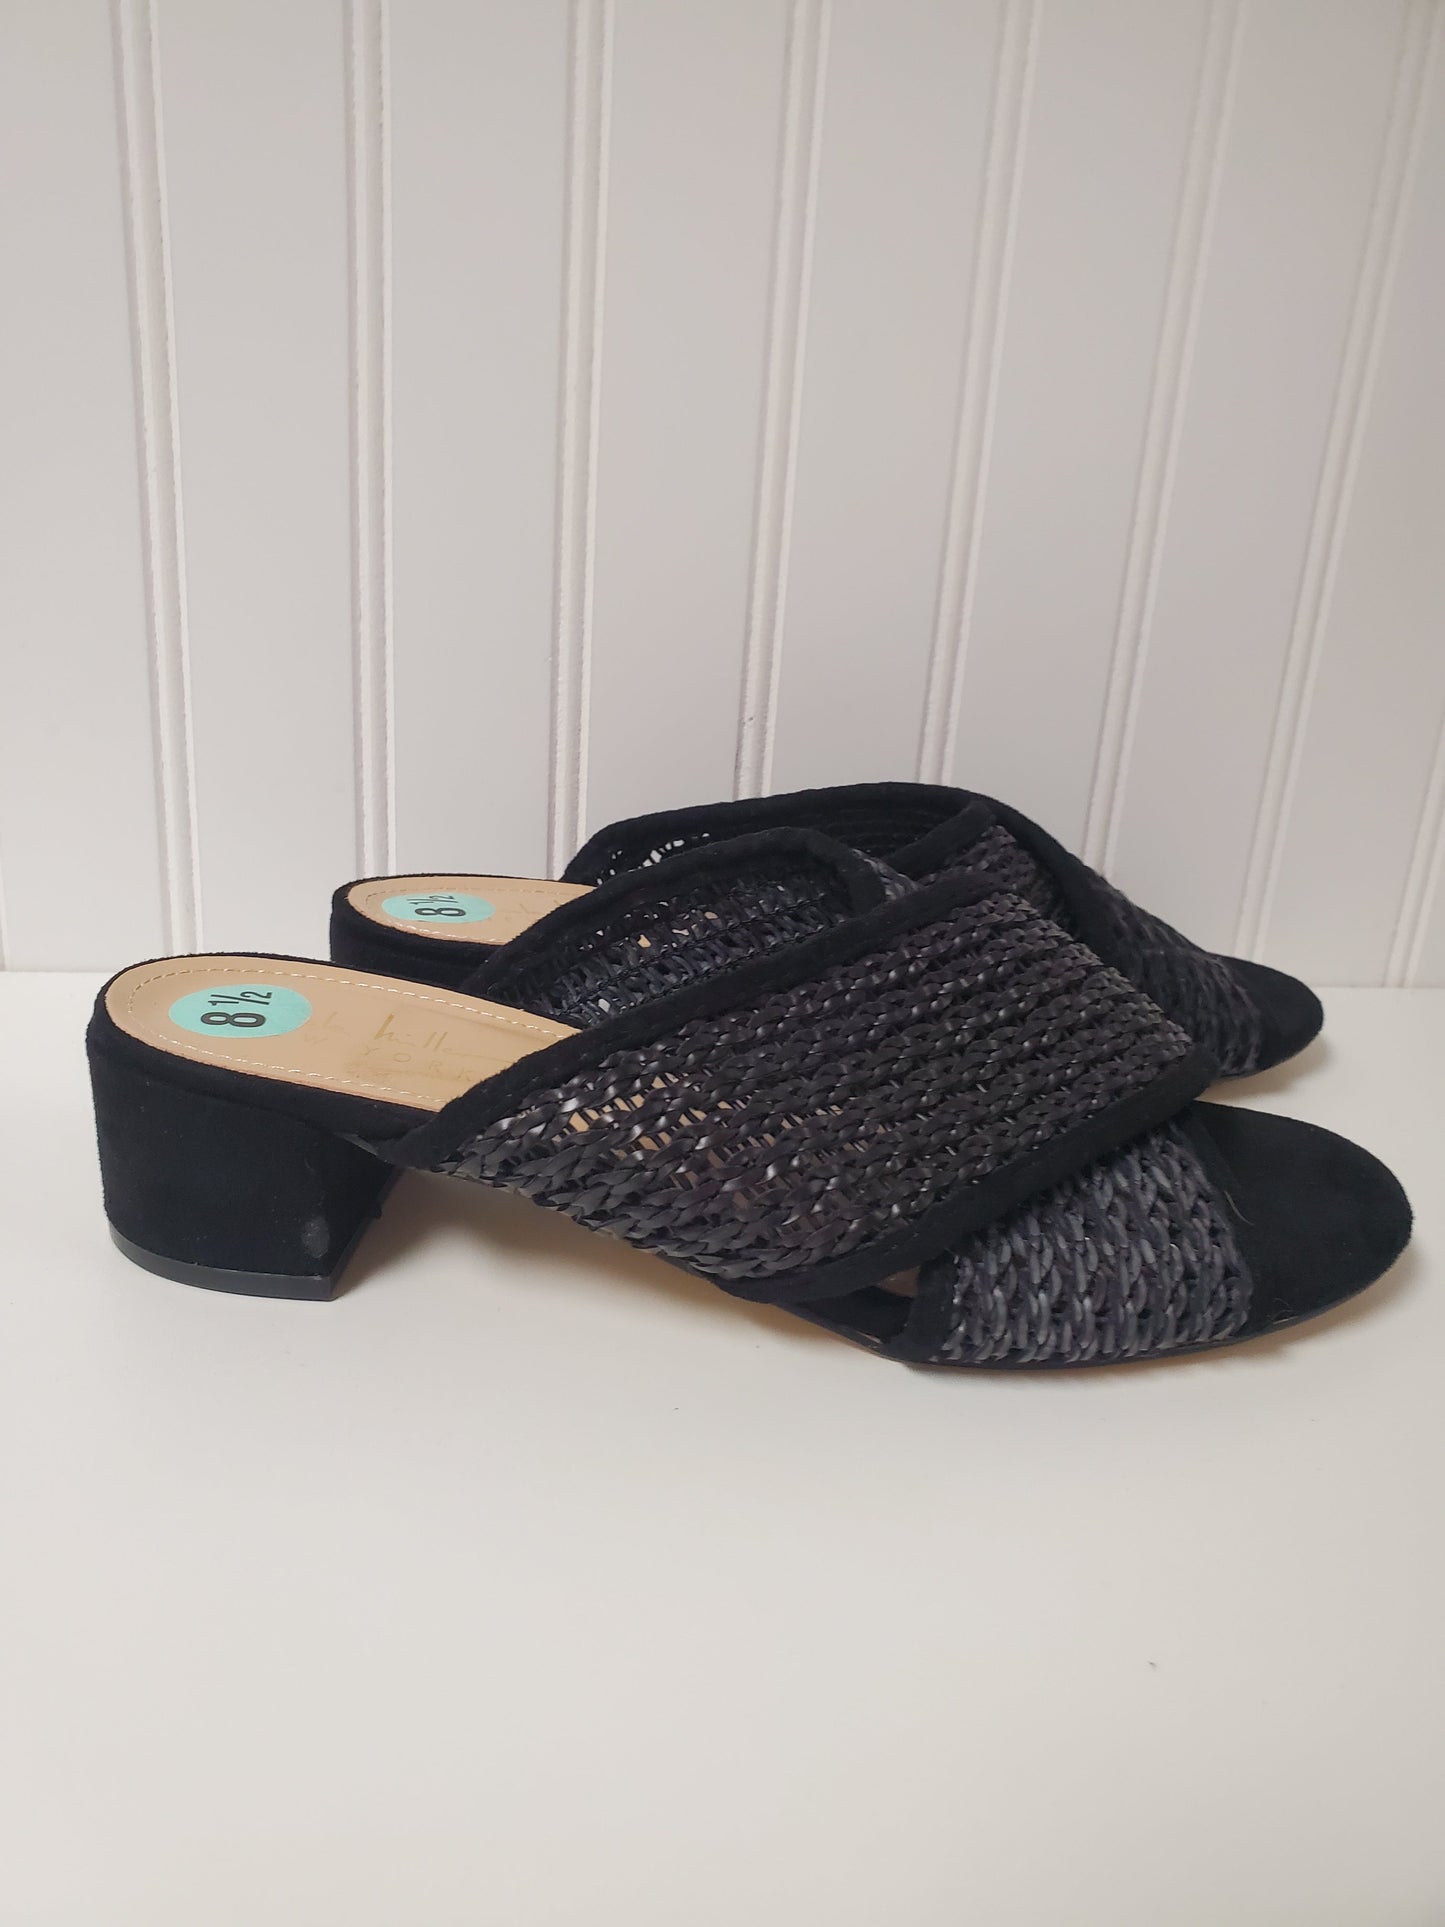 Black Sandals Heels Block Nicole Miller, Size 8.5